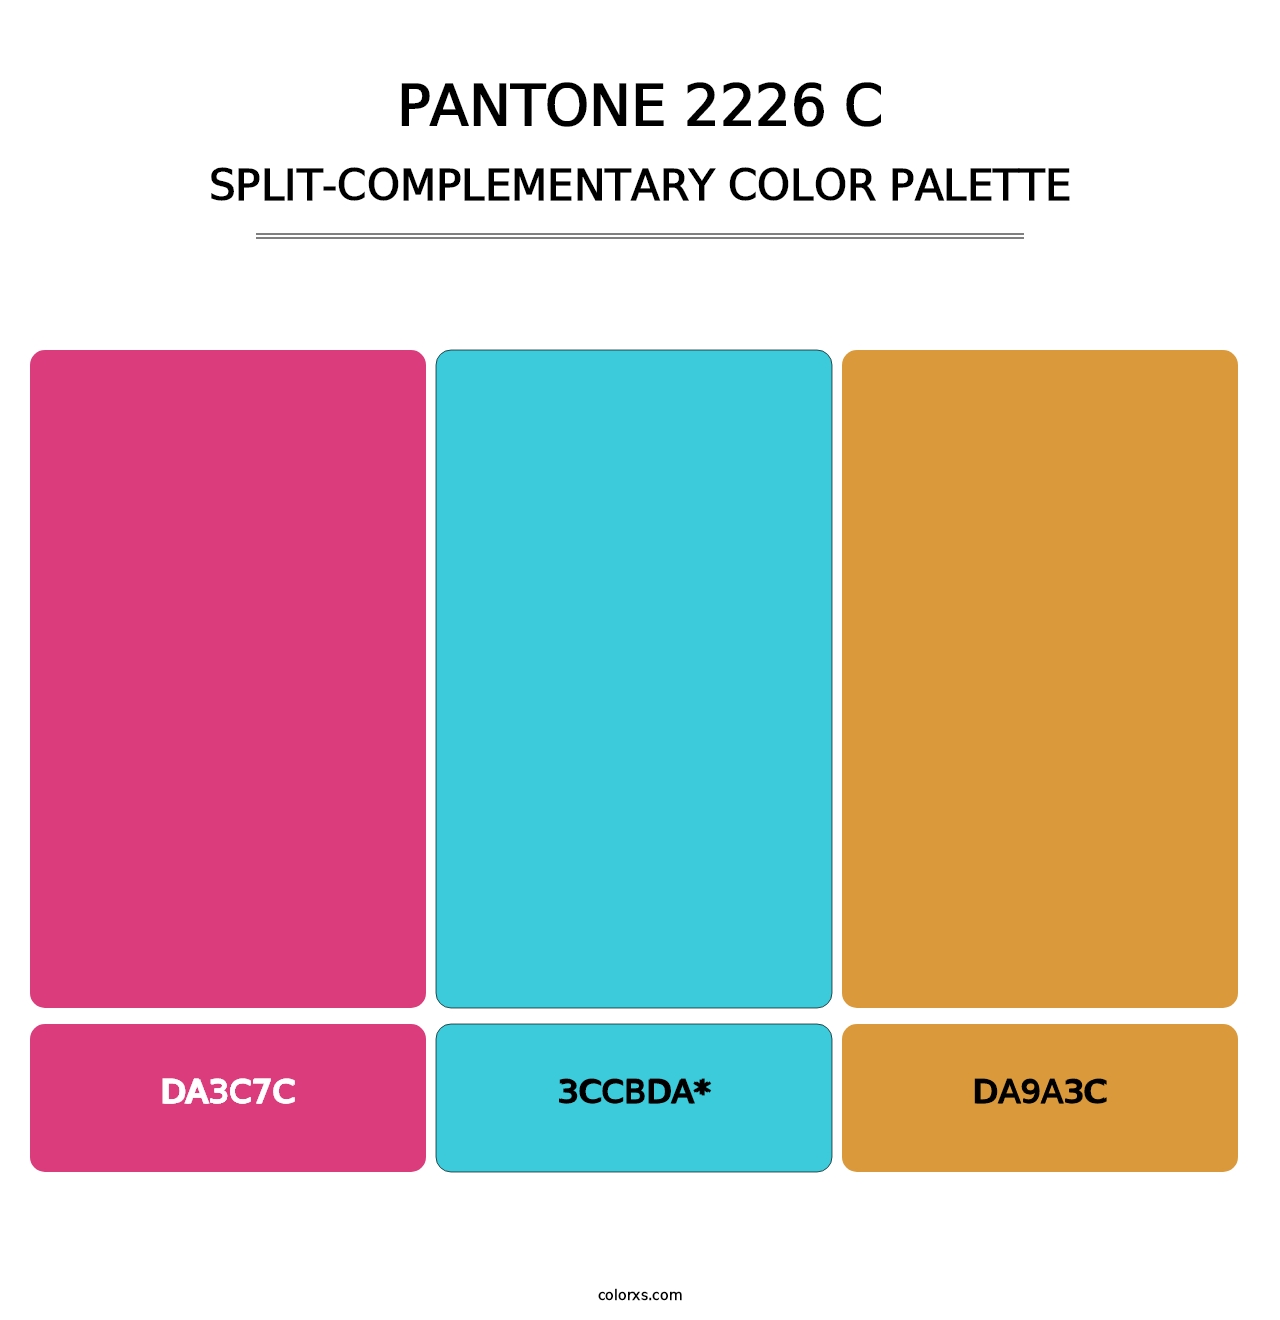 PANTONE 2226 C - Split-Complementary Color Palette